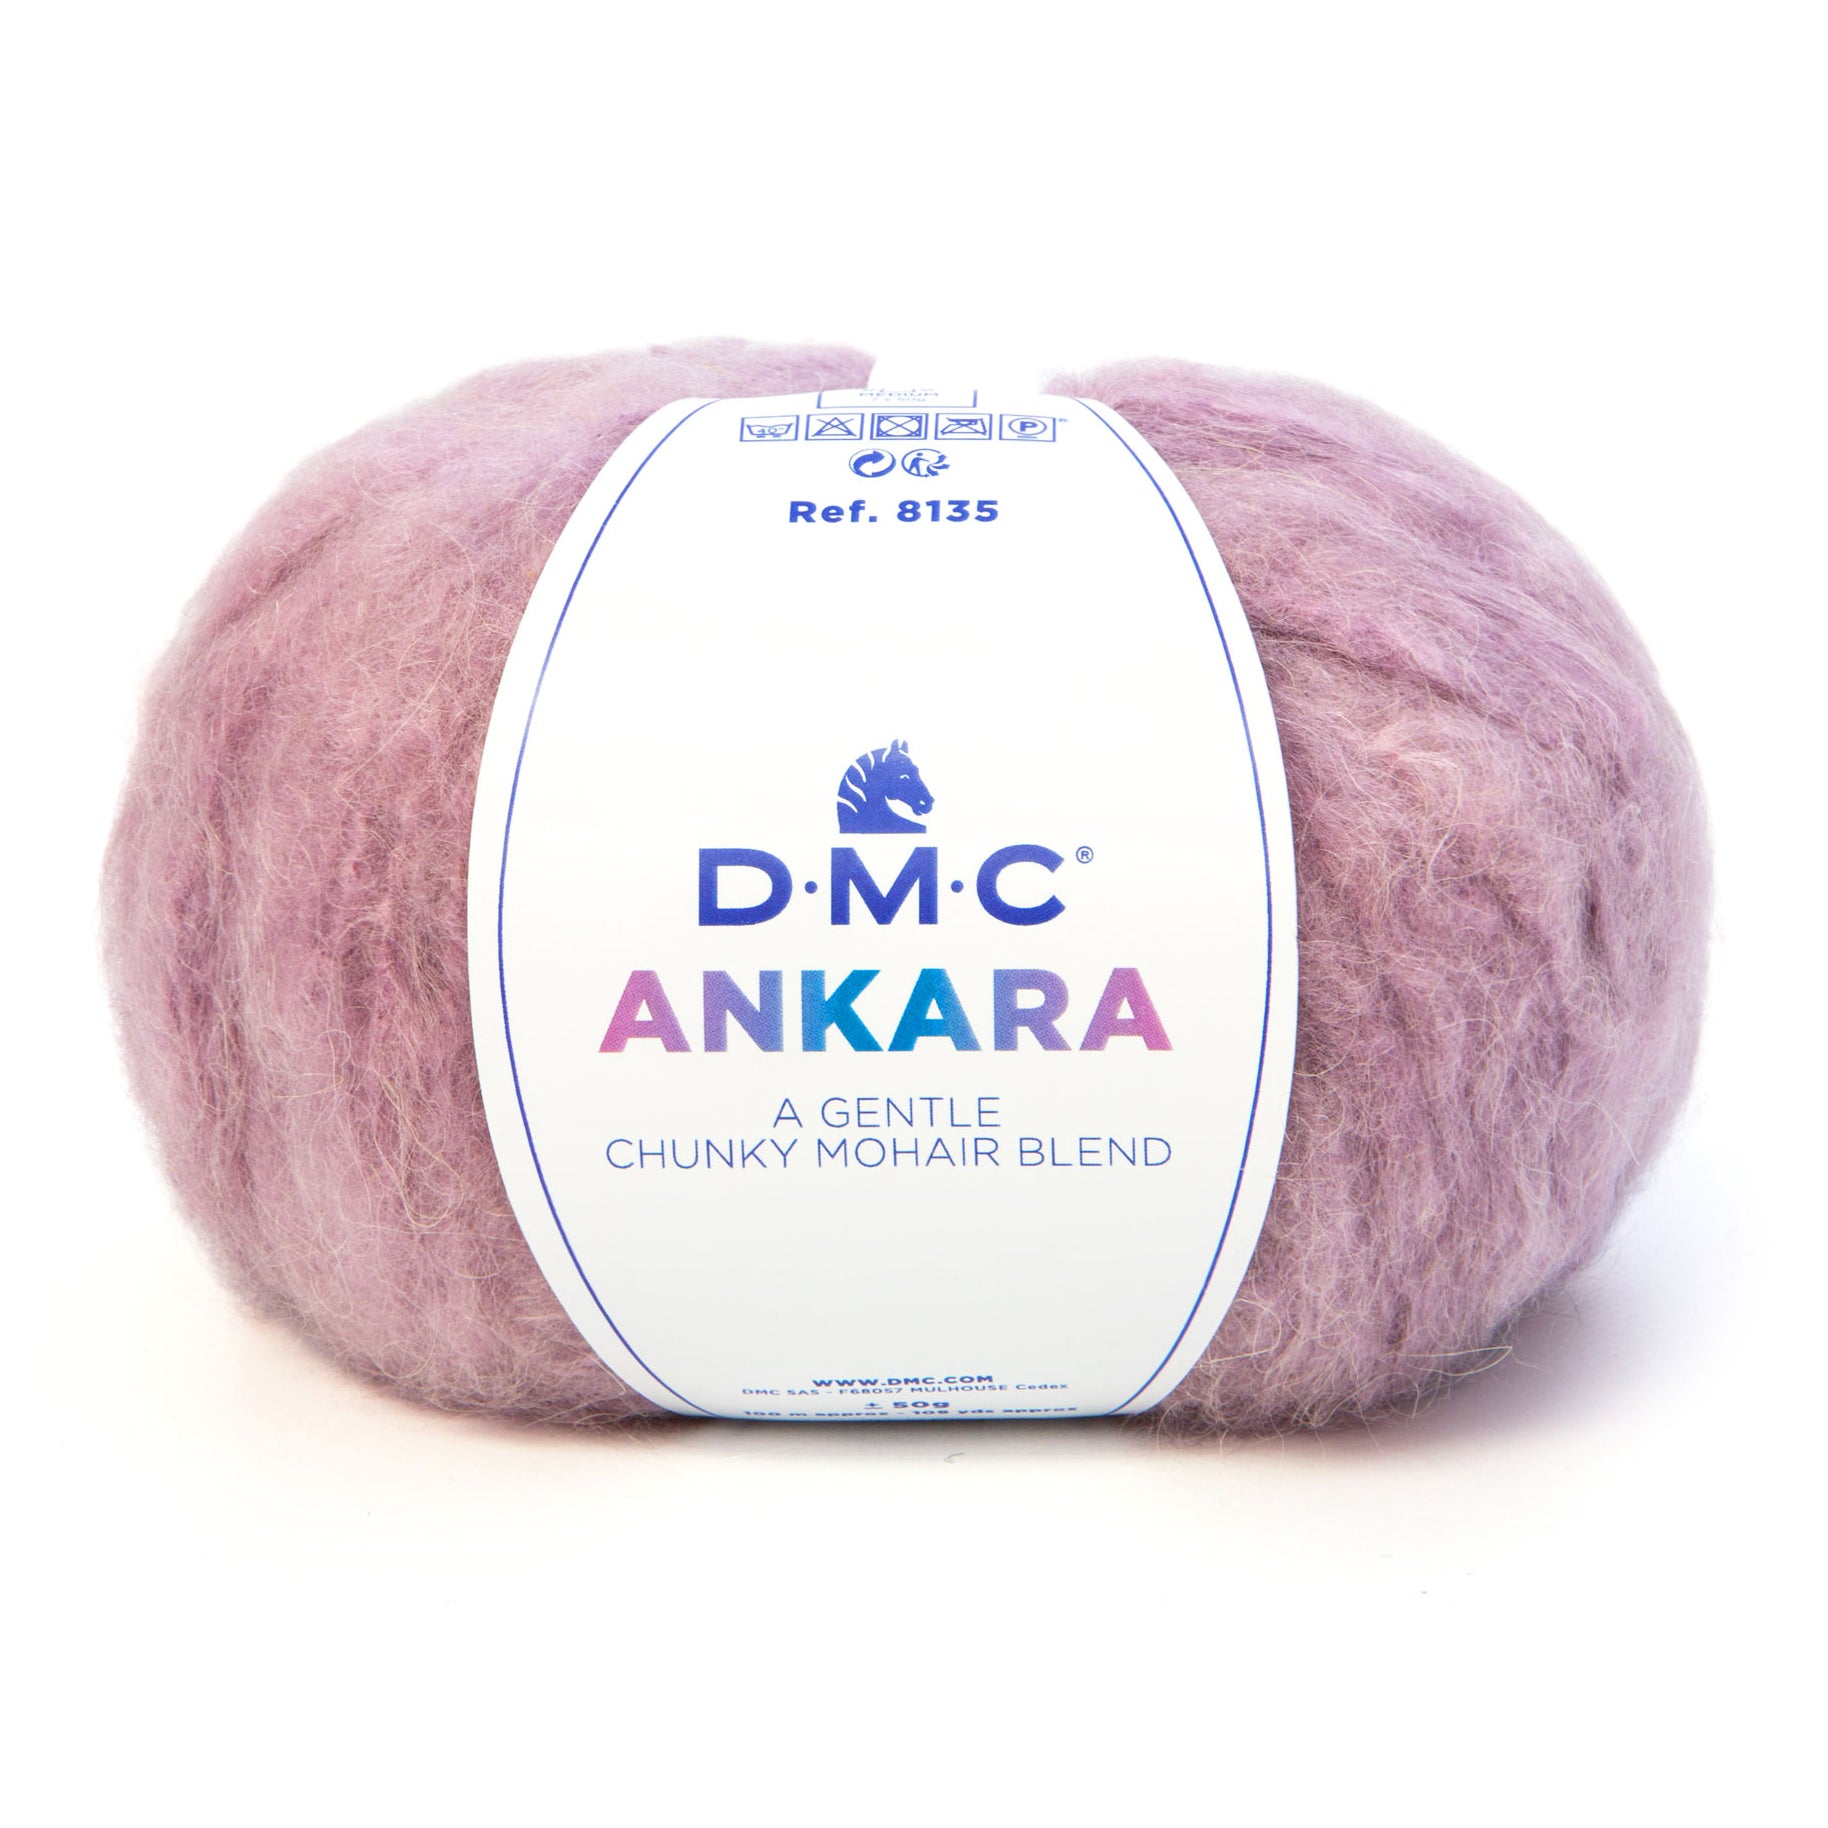 DMC Ankara - Chunky Mohair and Acrylic Wool for Winter Garments